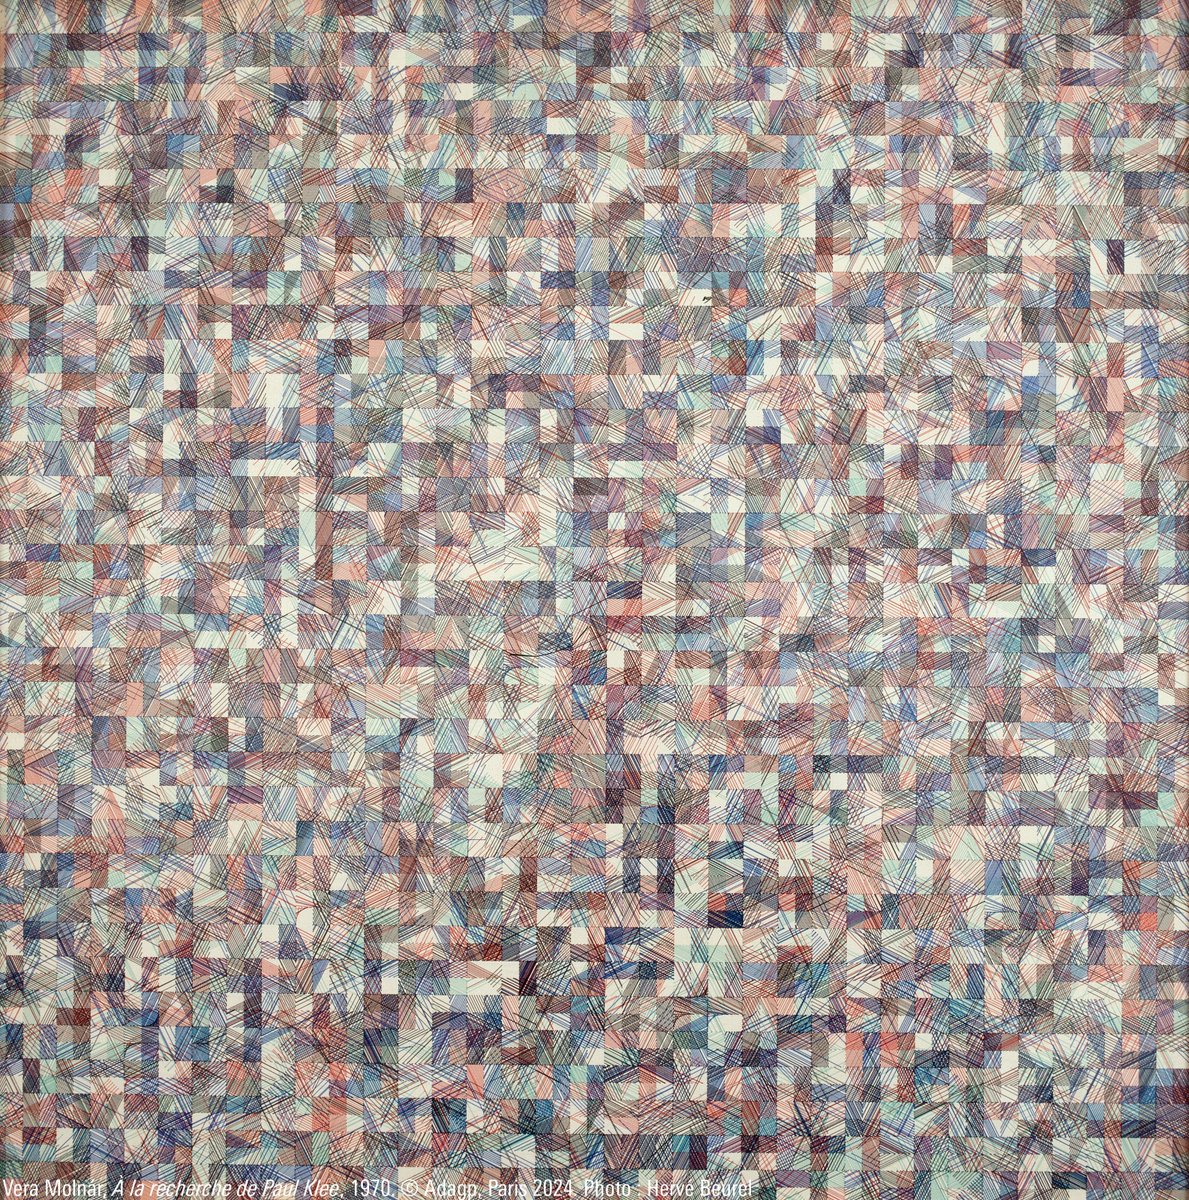 À la recherche de Paul Klee 🔎 En 1970, une peinture de Paul Klee constituée d'un damier dont les cases sont remplies de lignes parallèles ou obliques (« Variationen (Progressiv Motif) » 1927) inspire à Vera Molnár l'importante série « À la recherche de Paul Klee ». Visitez